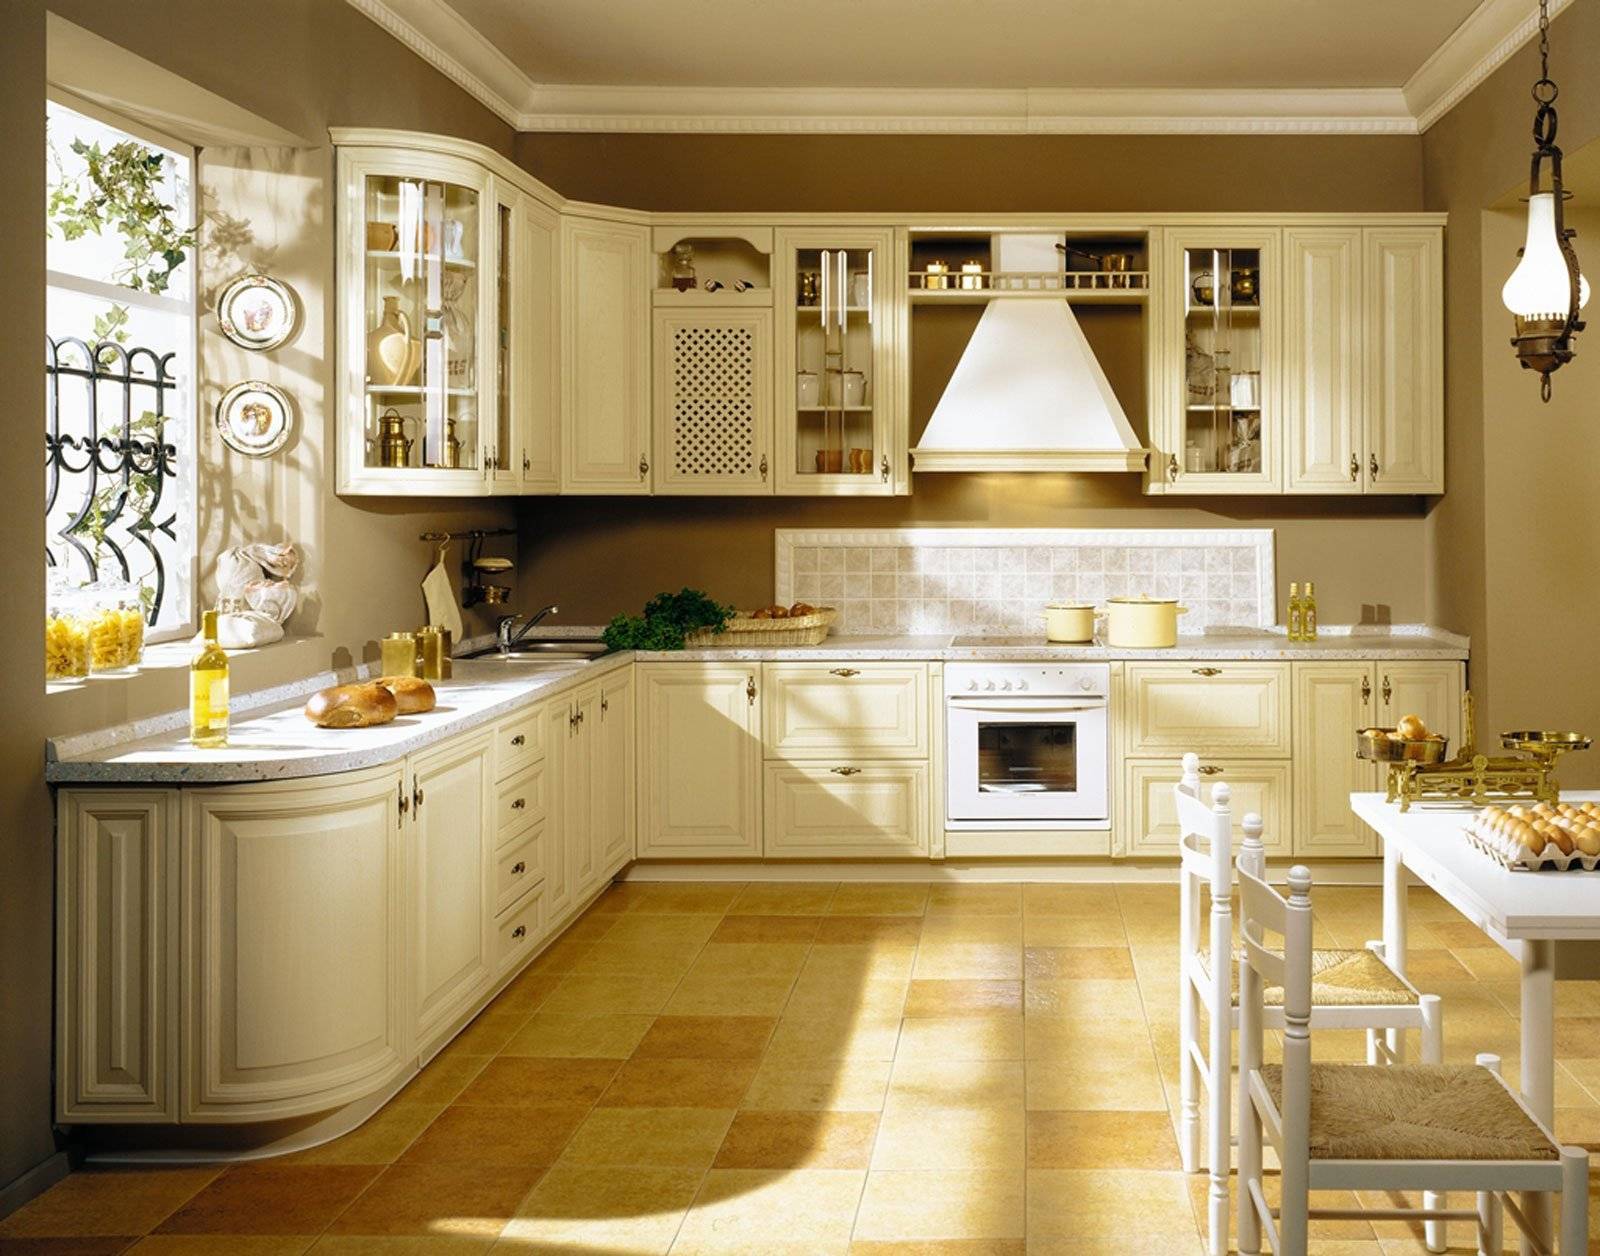 Варианты кухонь: какие бывают типы и разновидности кухонных гарнитуров, дизайн и вид интерьера в квартире, стили для большой кухни